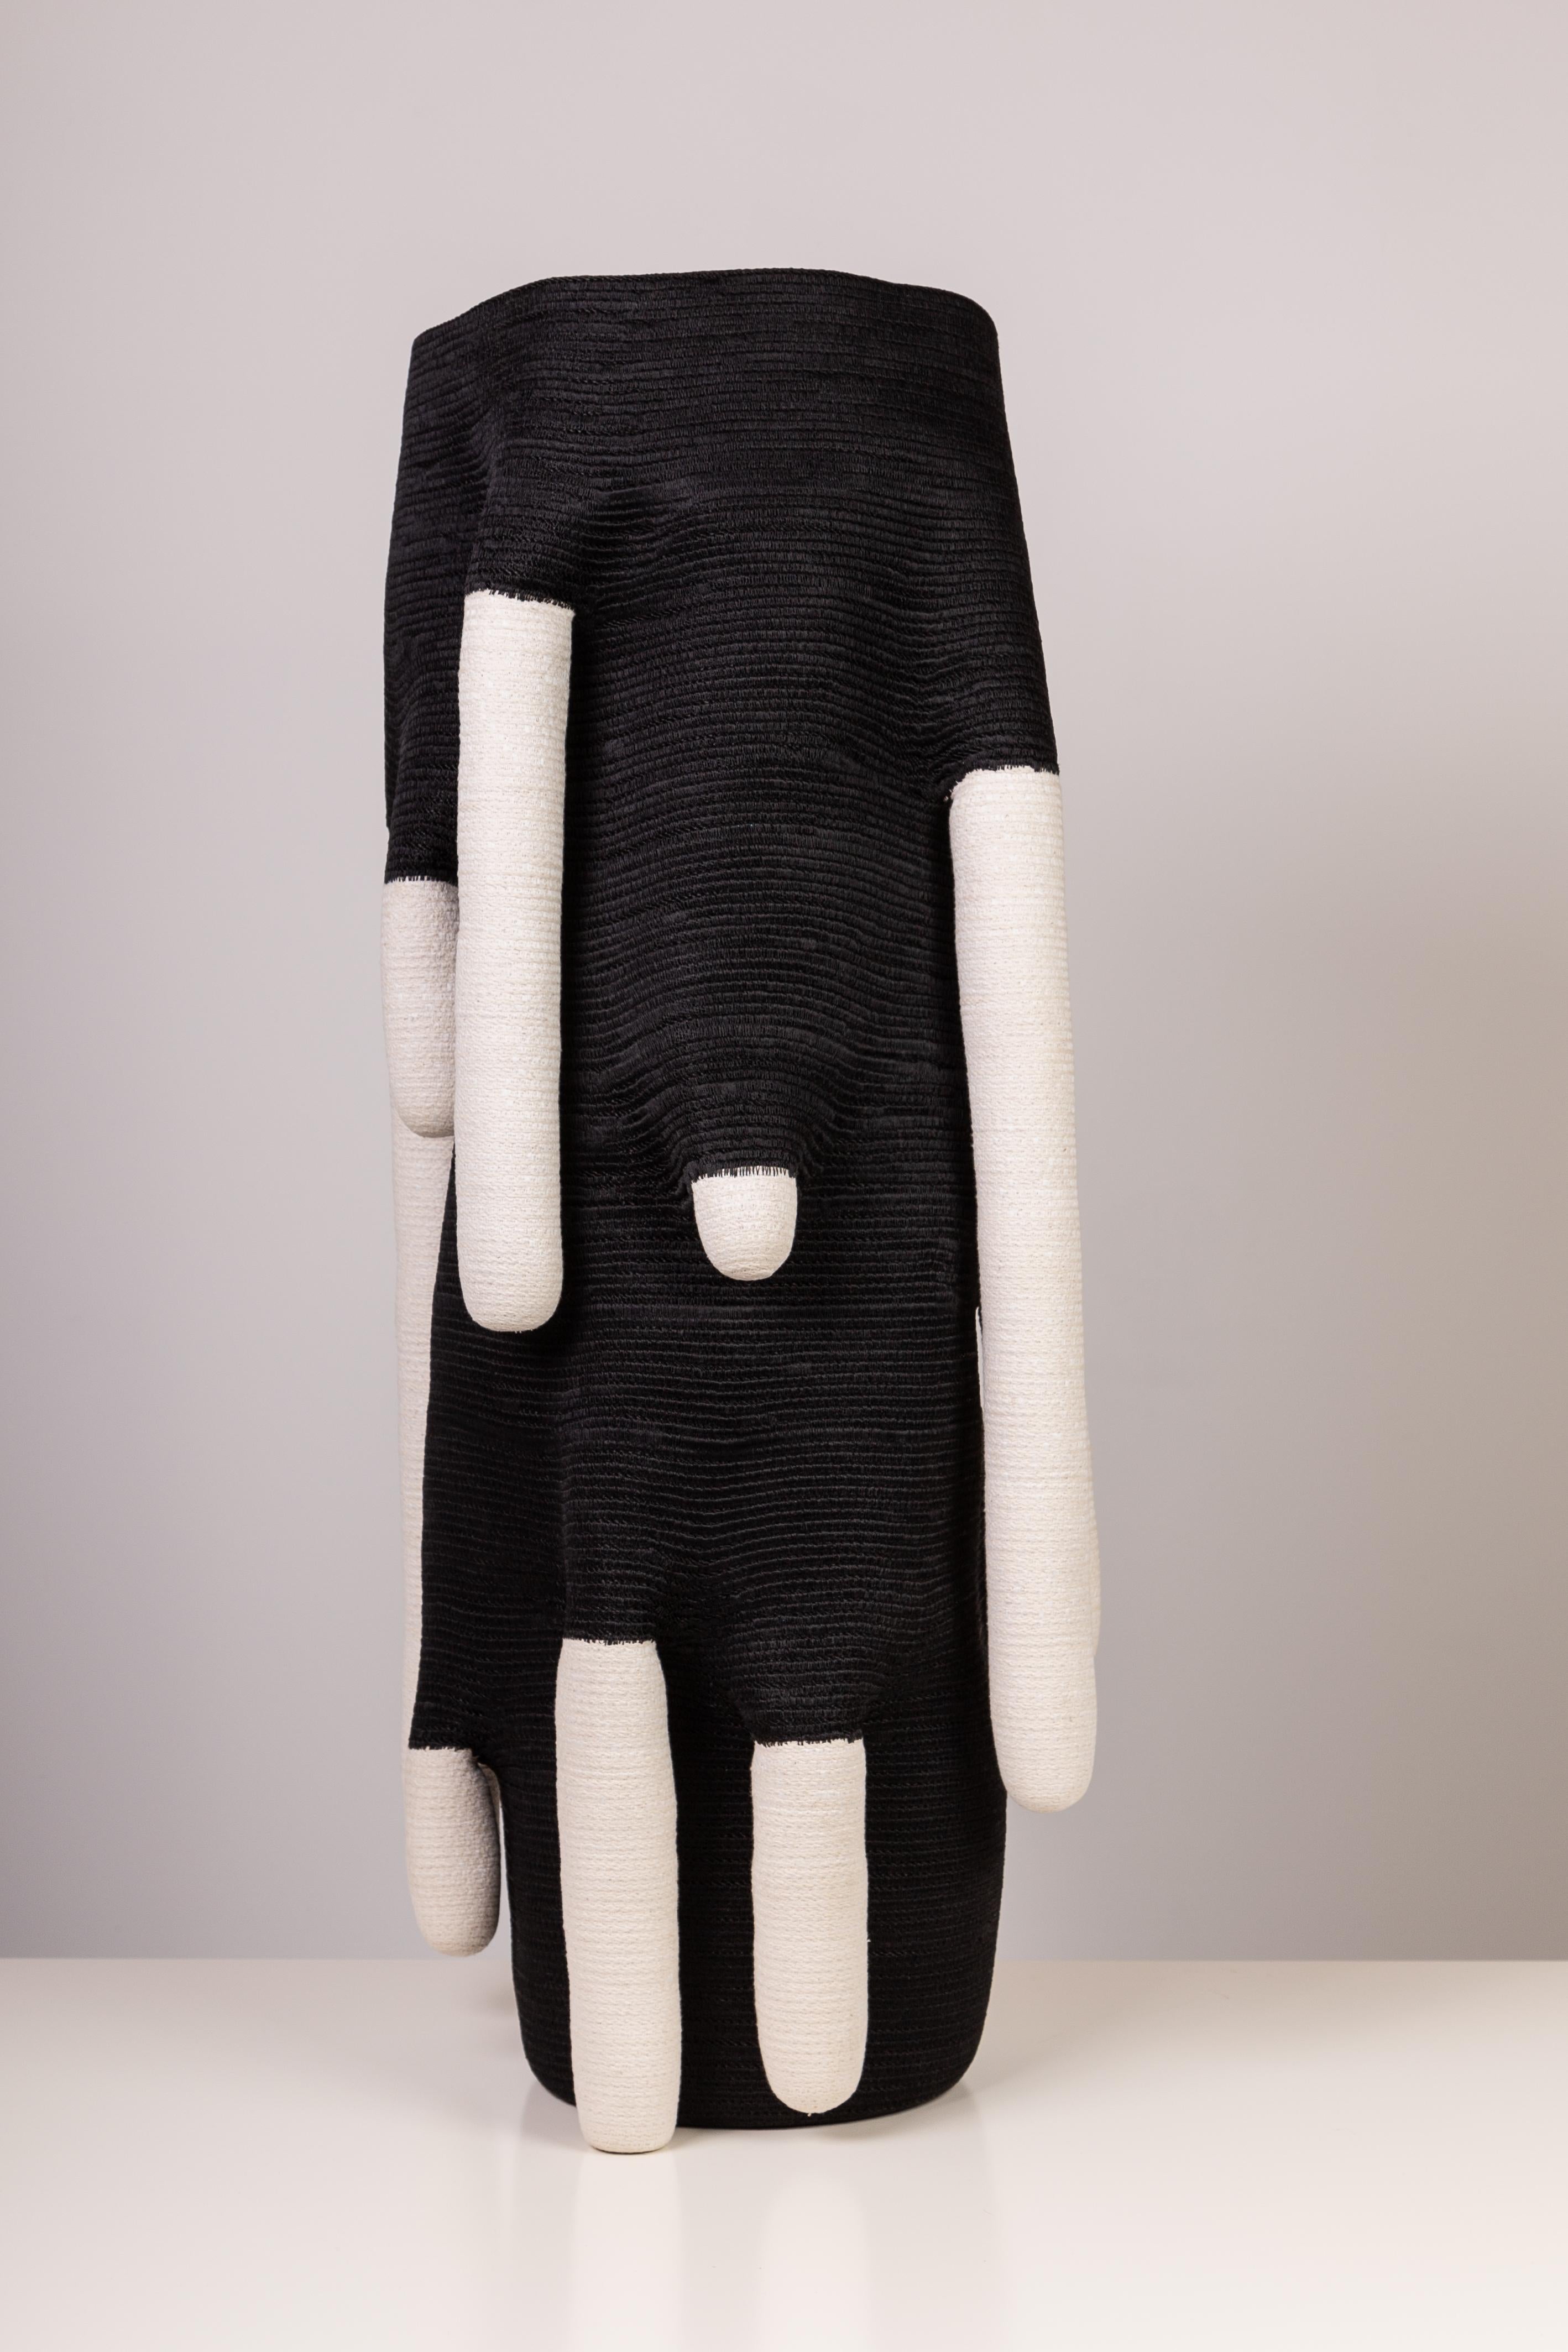 Sculpture en fibre de coton enduite et cousue en goutte d'eau de Doug Johnston, 2015 5